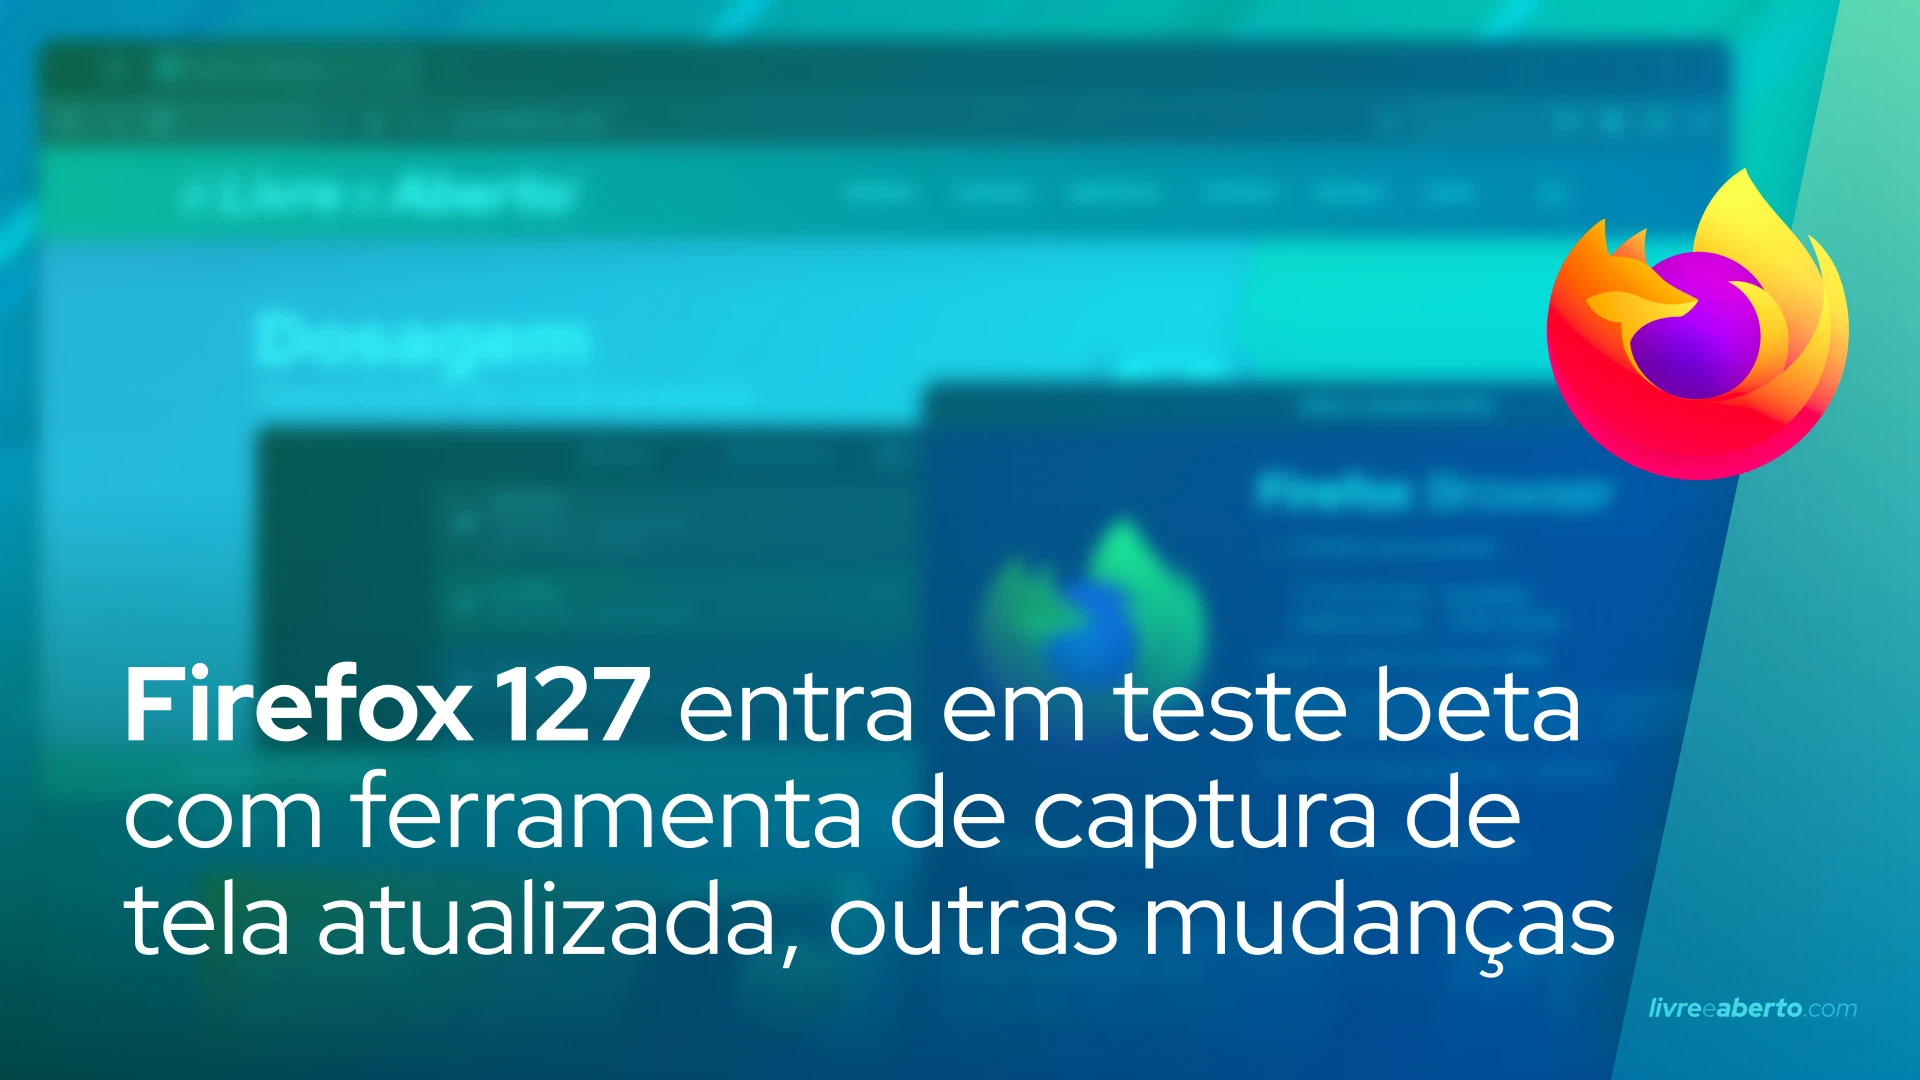 Firefox 127 entra em teste beta com ferramenta de captura de tela atualizada, outras mudanças